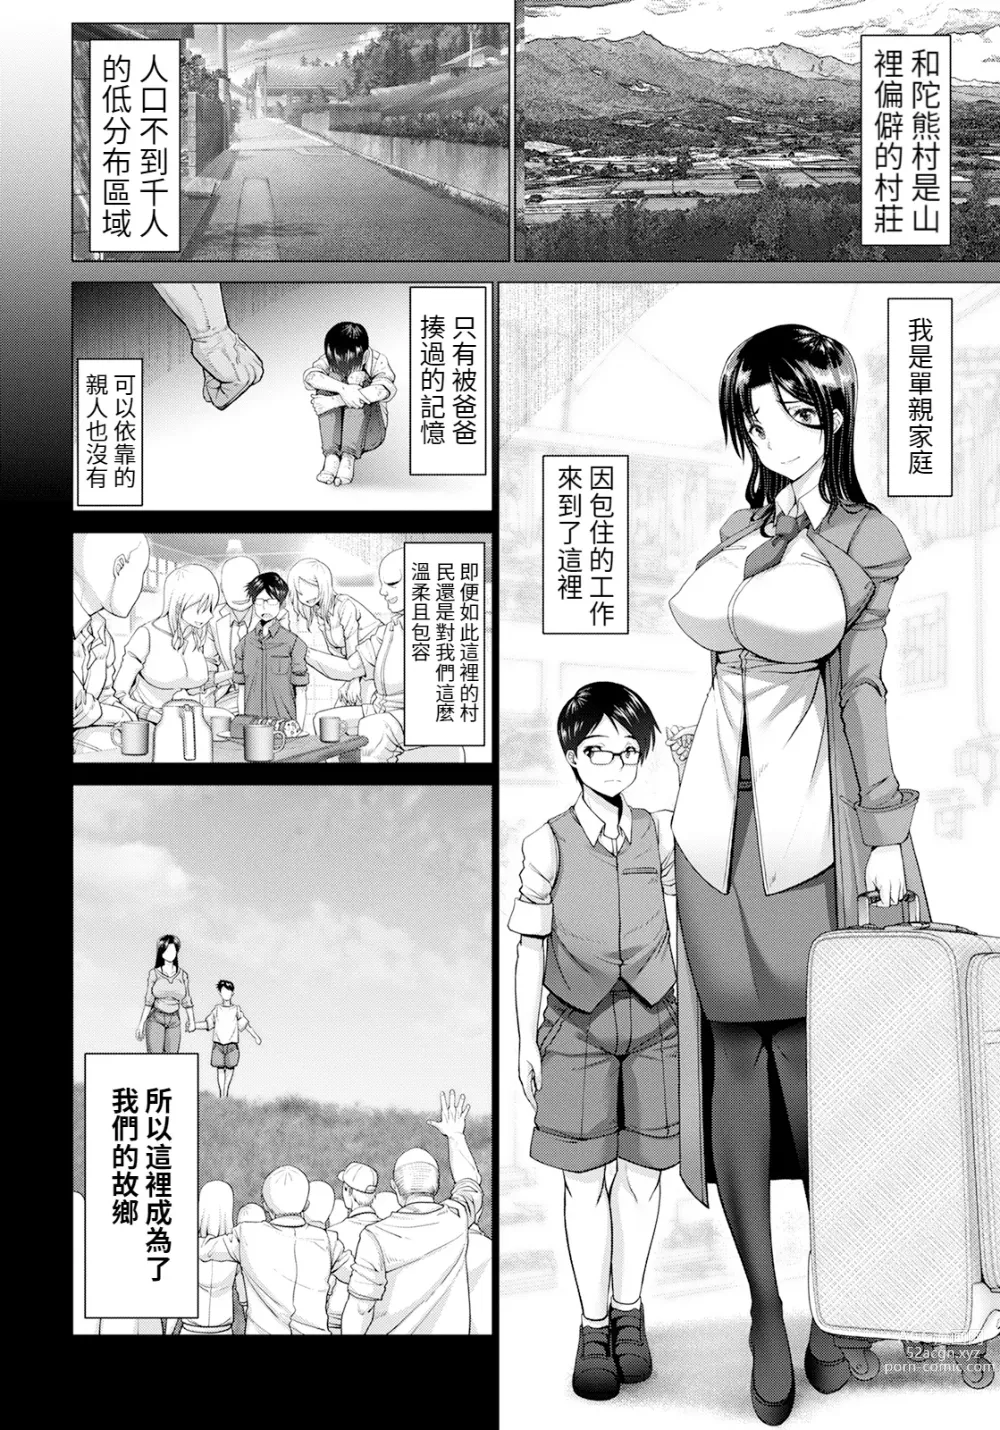 Page 6 of manga Itosi no Manman -Midara na Onsen Ryokou-